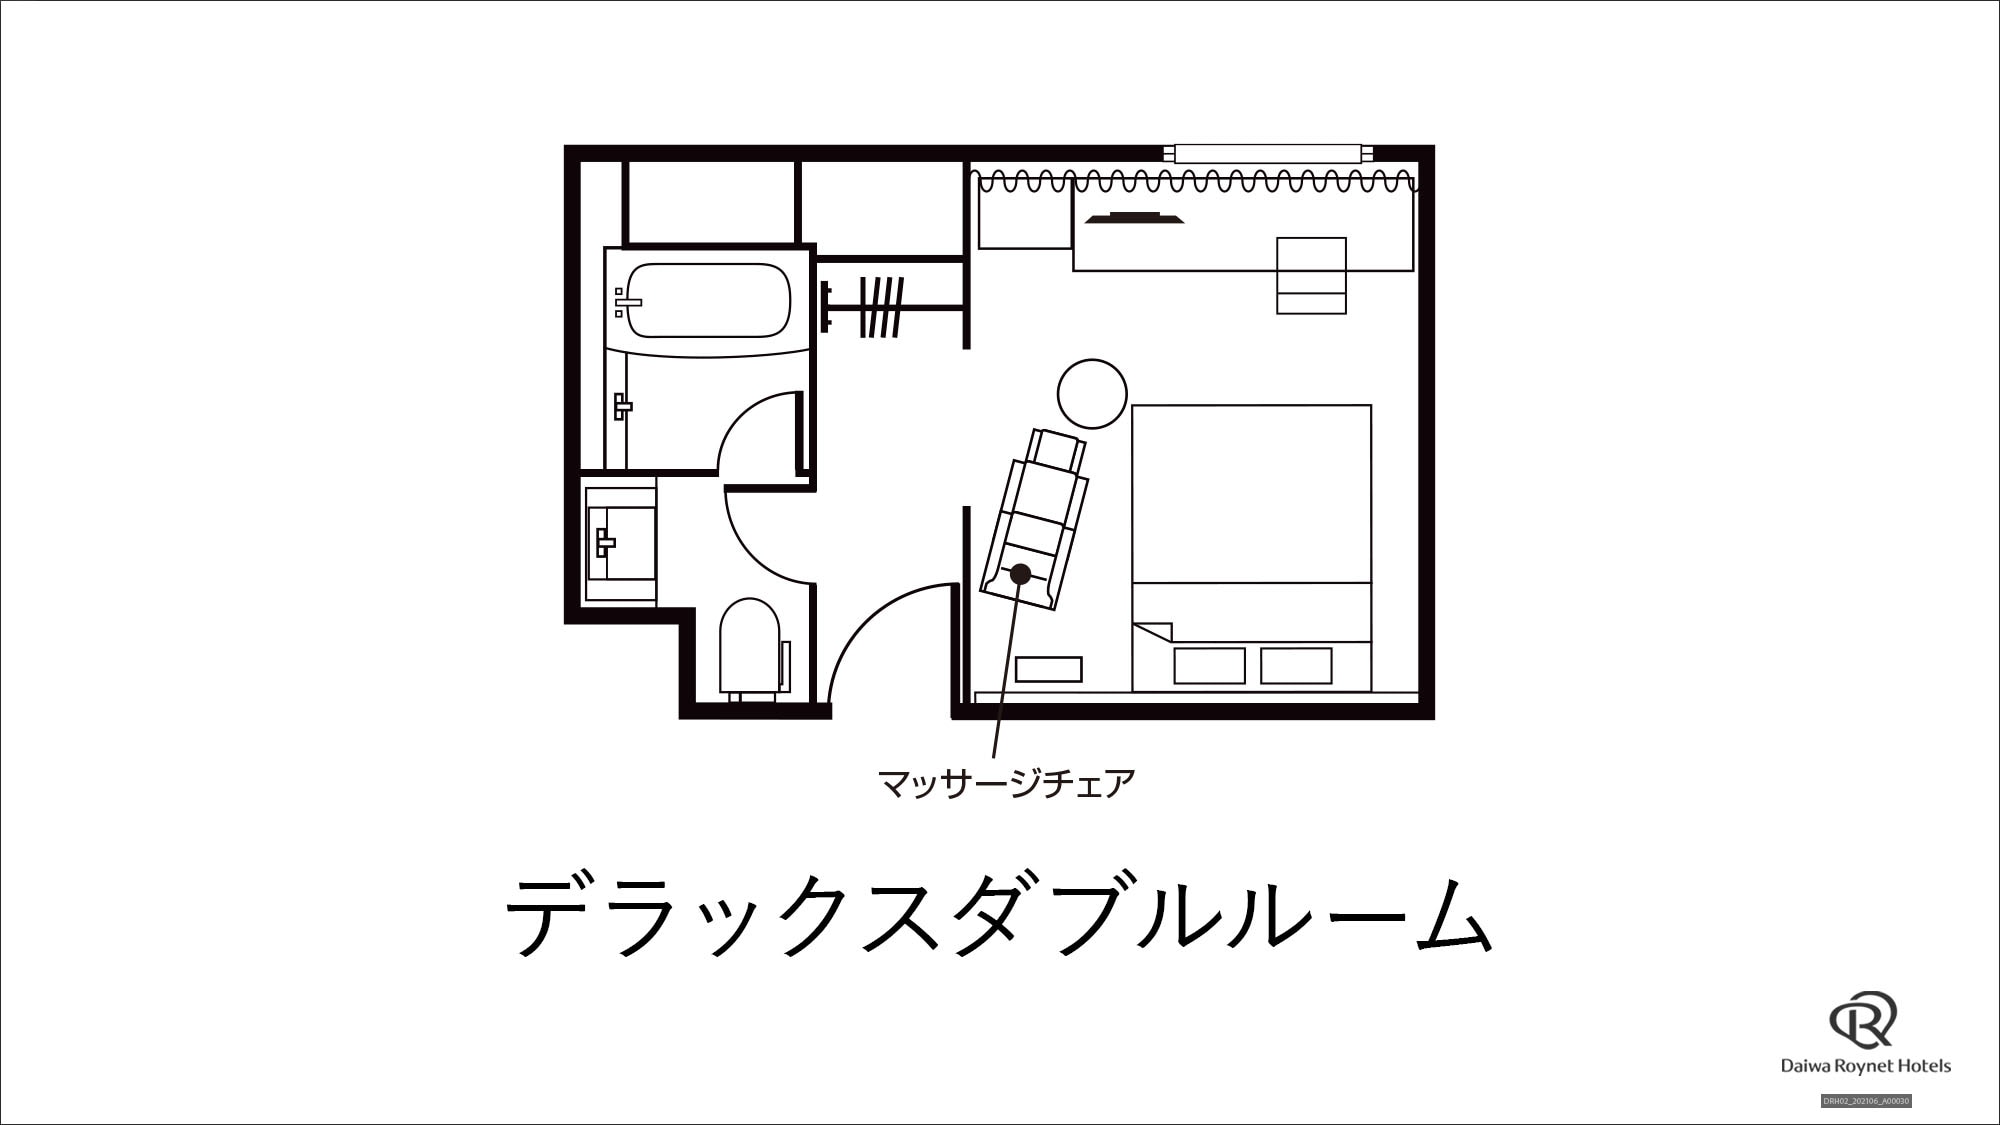 [Deluxe Double Room] Floor plan